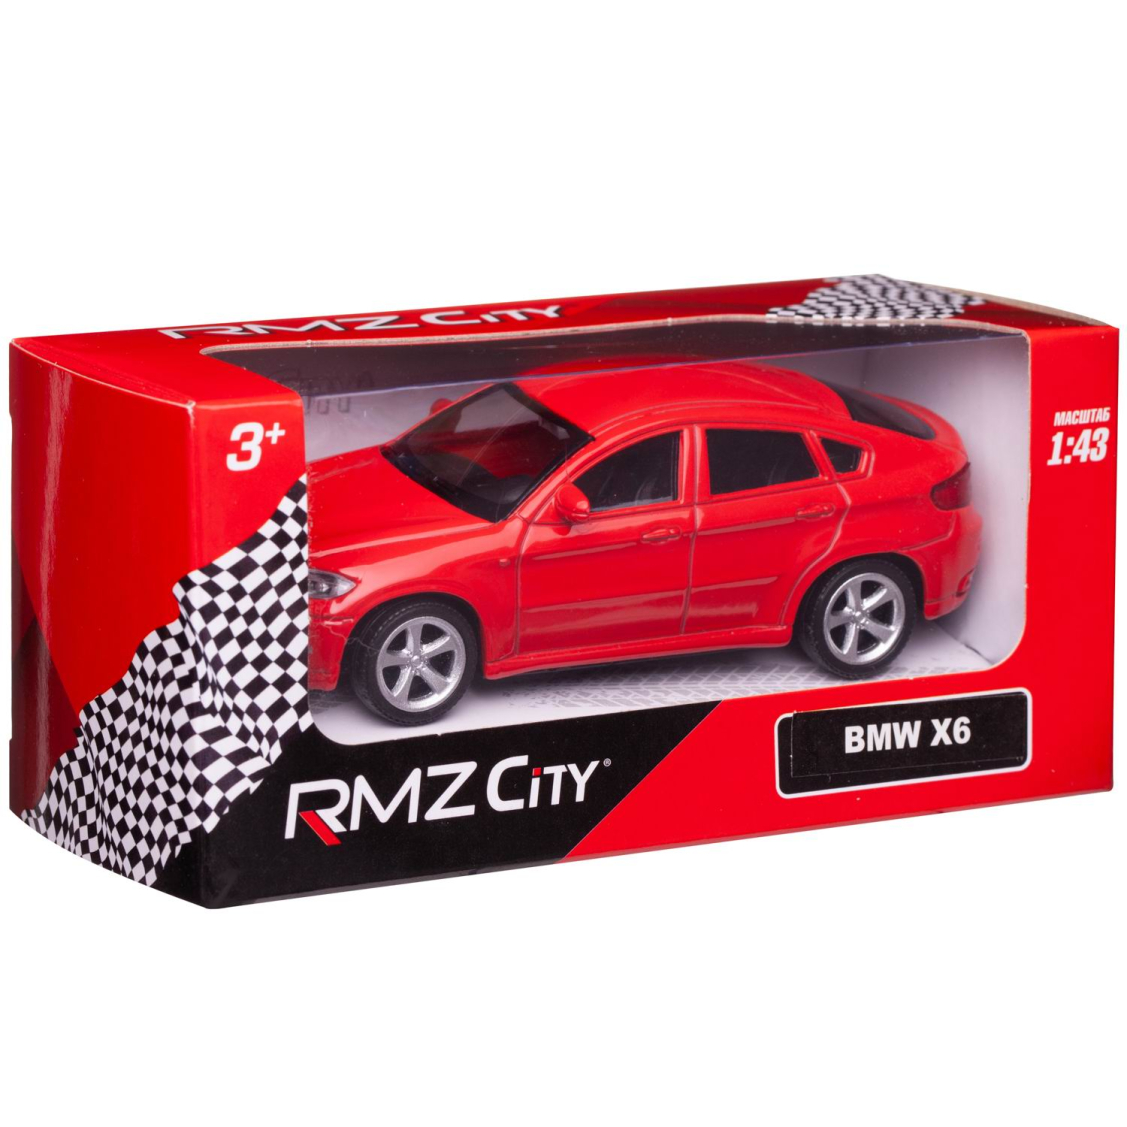 Машинка металлическая Uni-Fortune RMZ City 1:43 BMW X6 , без механизмов, цвет красный